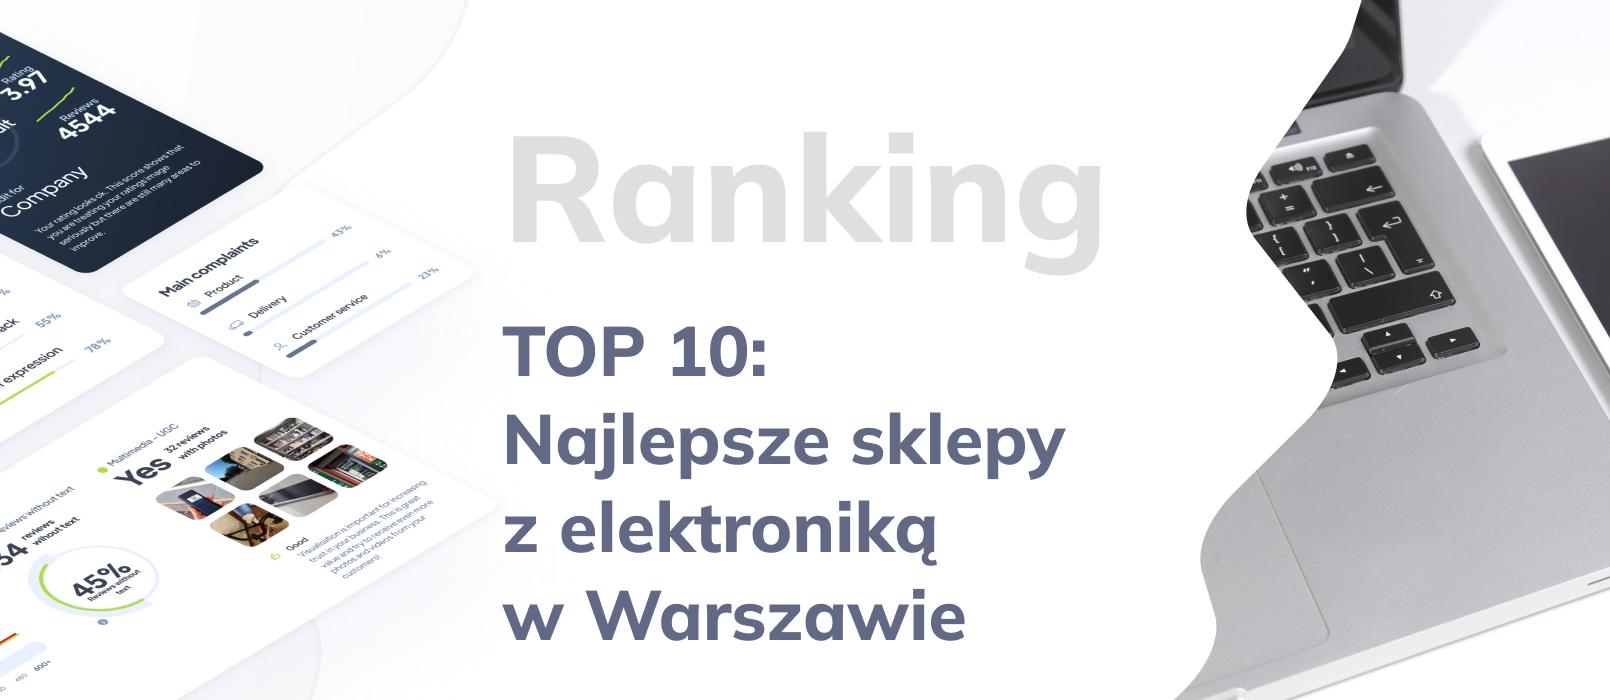 TOP 10: Ranking najlepszych sklepów z elektroniką w Warszawie